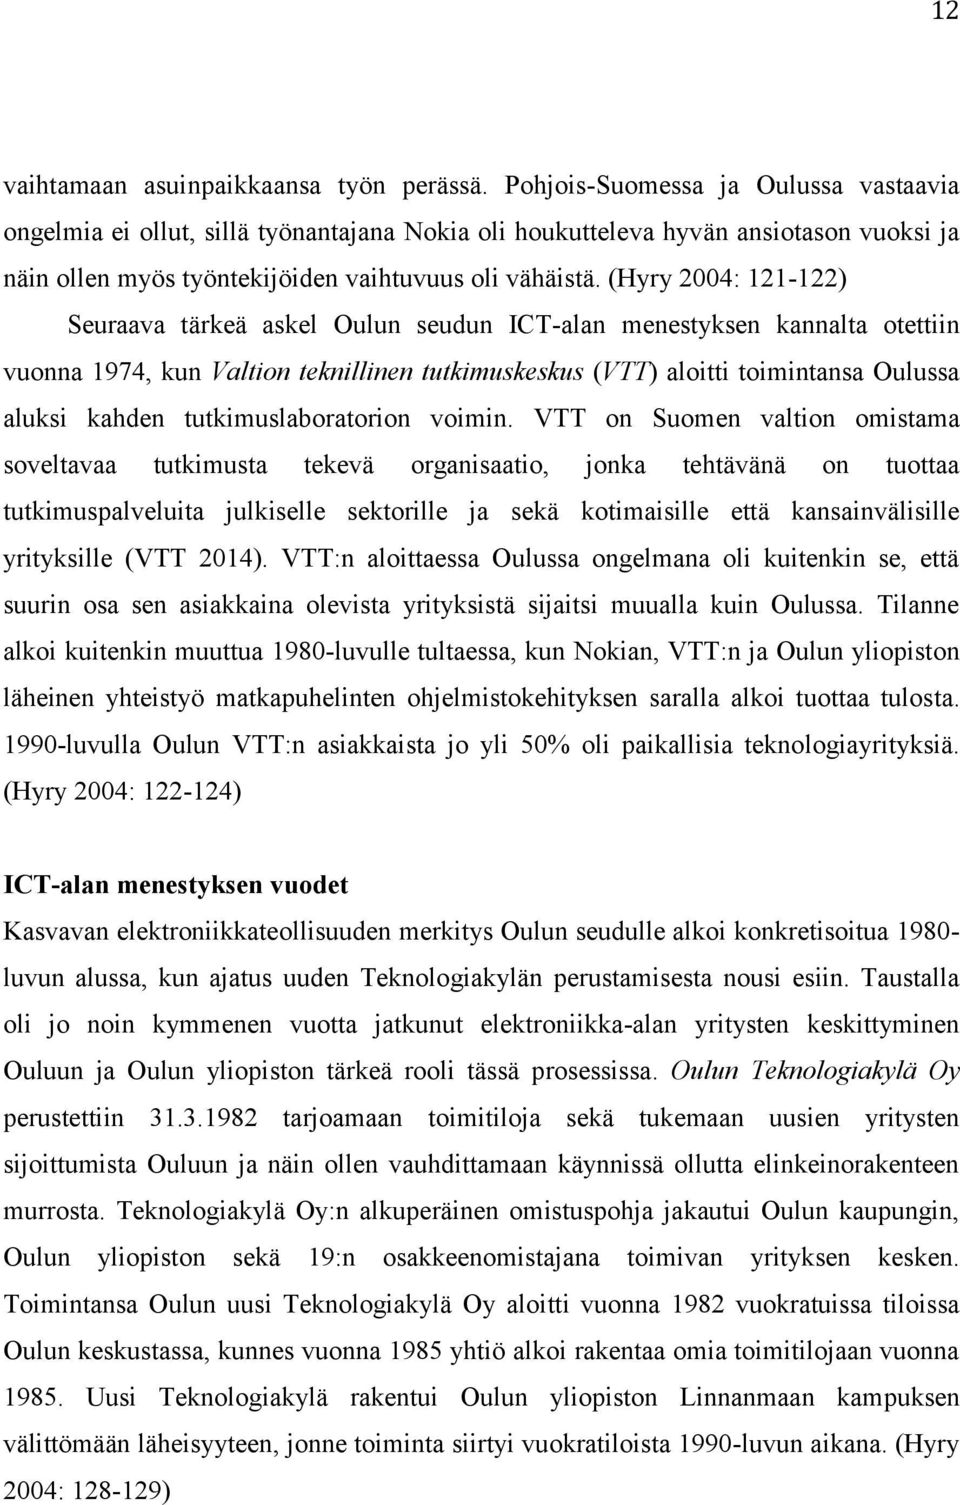 (Hyry 2004: 121-122) Seuraava tärkeä askel Oulun seudun ICT-alan menestyksen kannalta otettiin vuonna 1974, kun Valtion teknillinen tutkimuskeskus (VTT) aloitti toimintansa Oulussa aluksi kahden